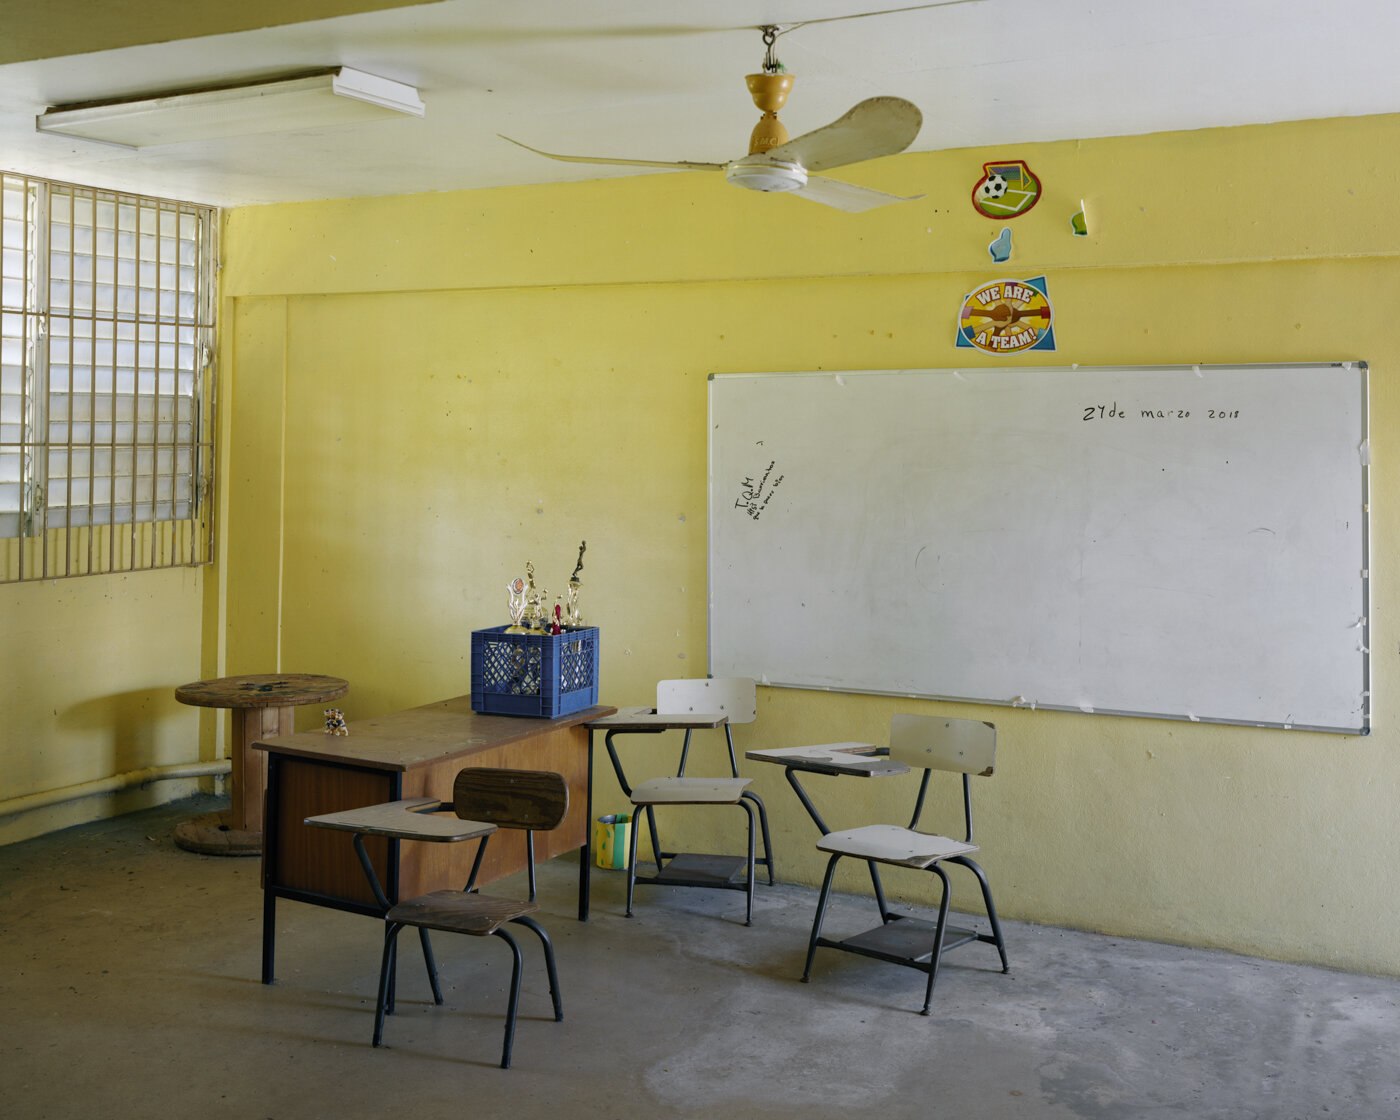  Victor Rojas II Elementary School, Arecibo, Puerto Rico 